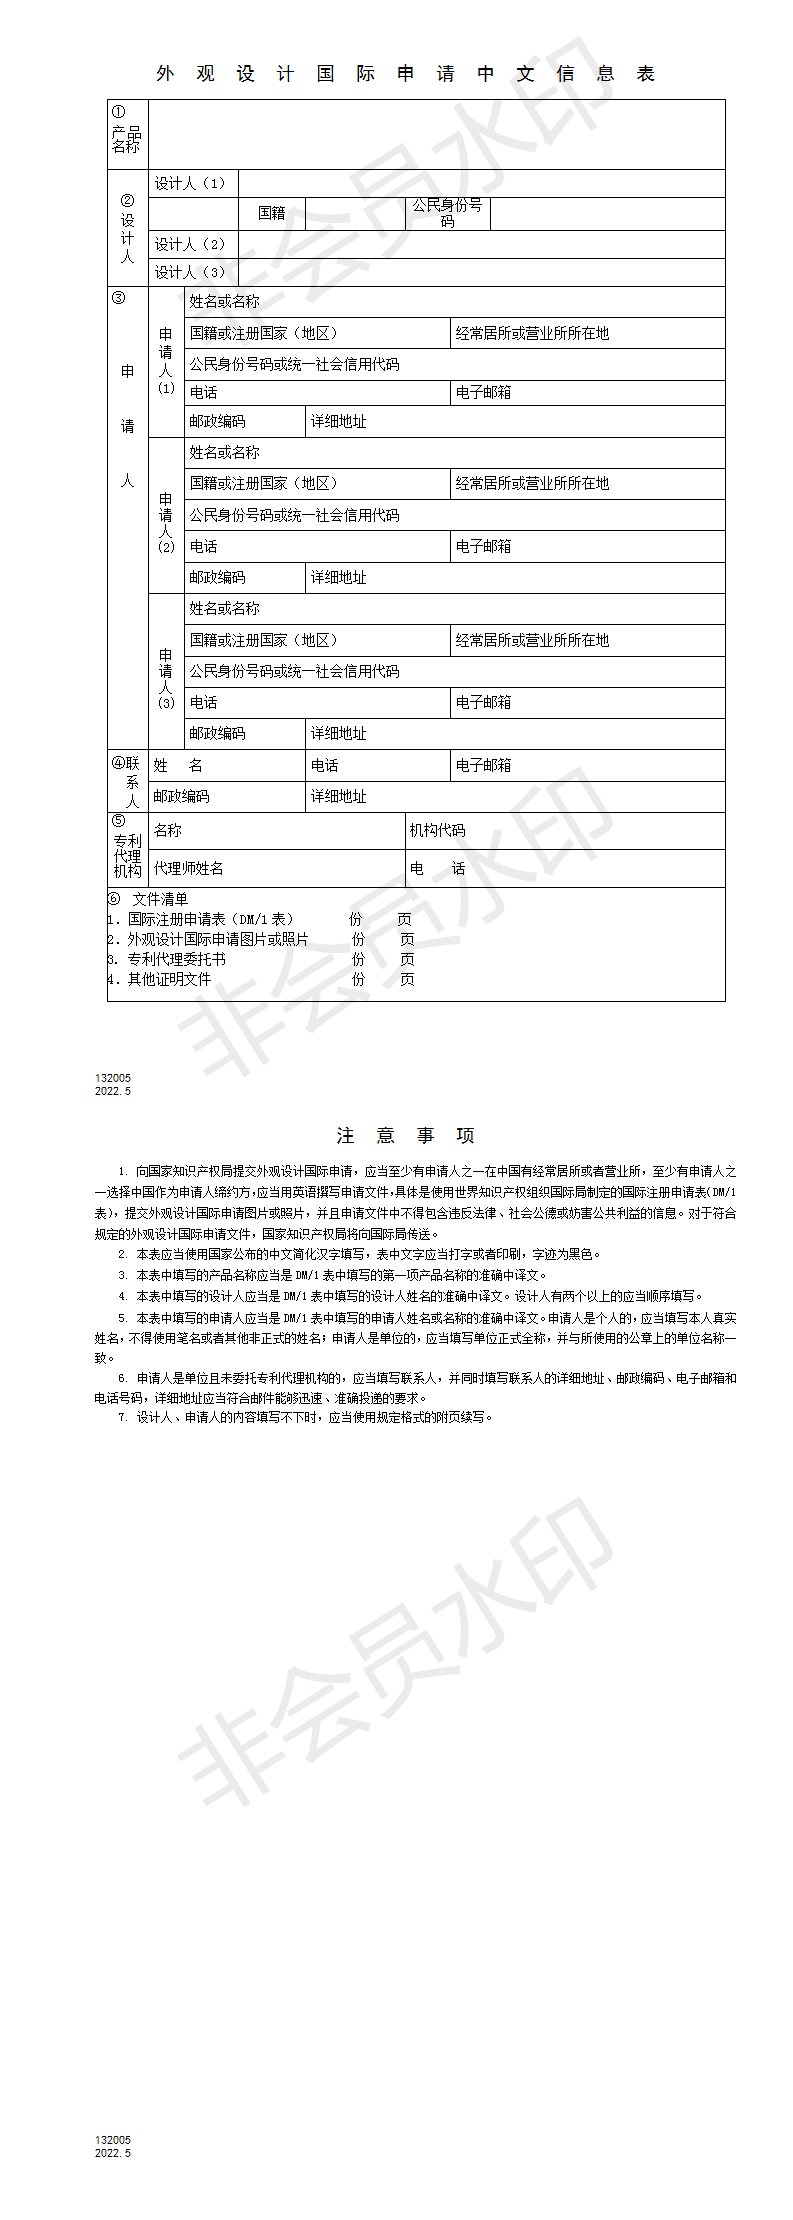 132005外观设计国际申请中文信息表_01